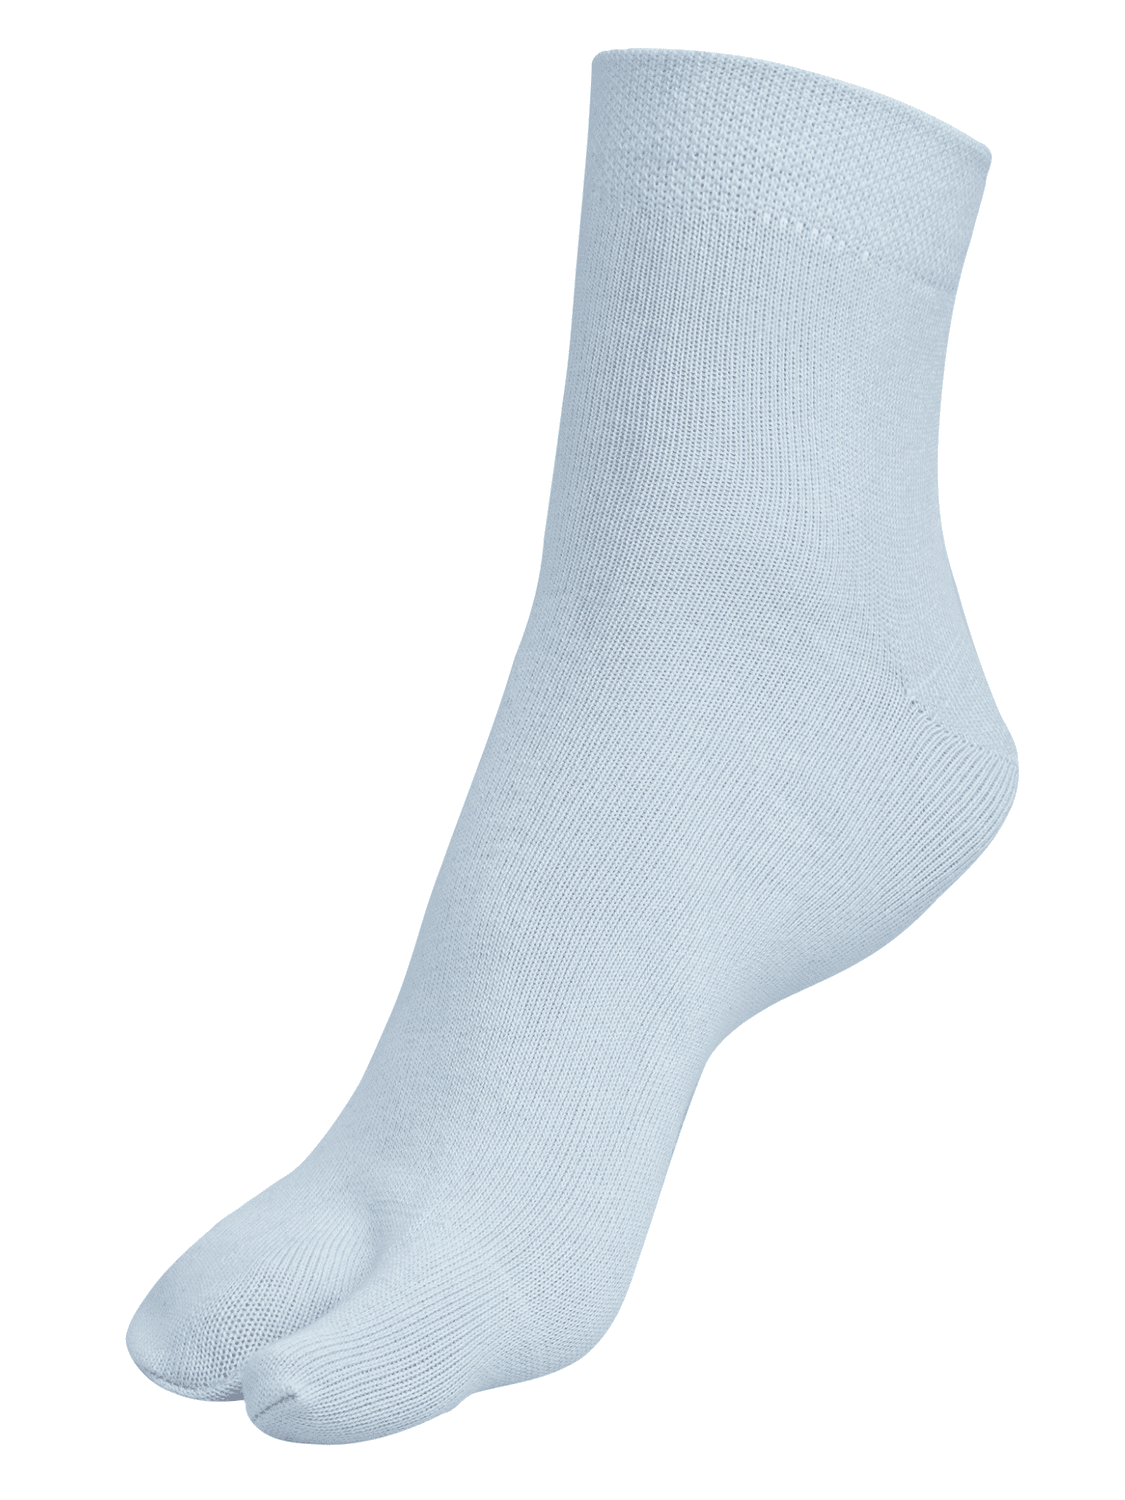 Ankle Length Thumb Socks - Light Blue